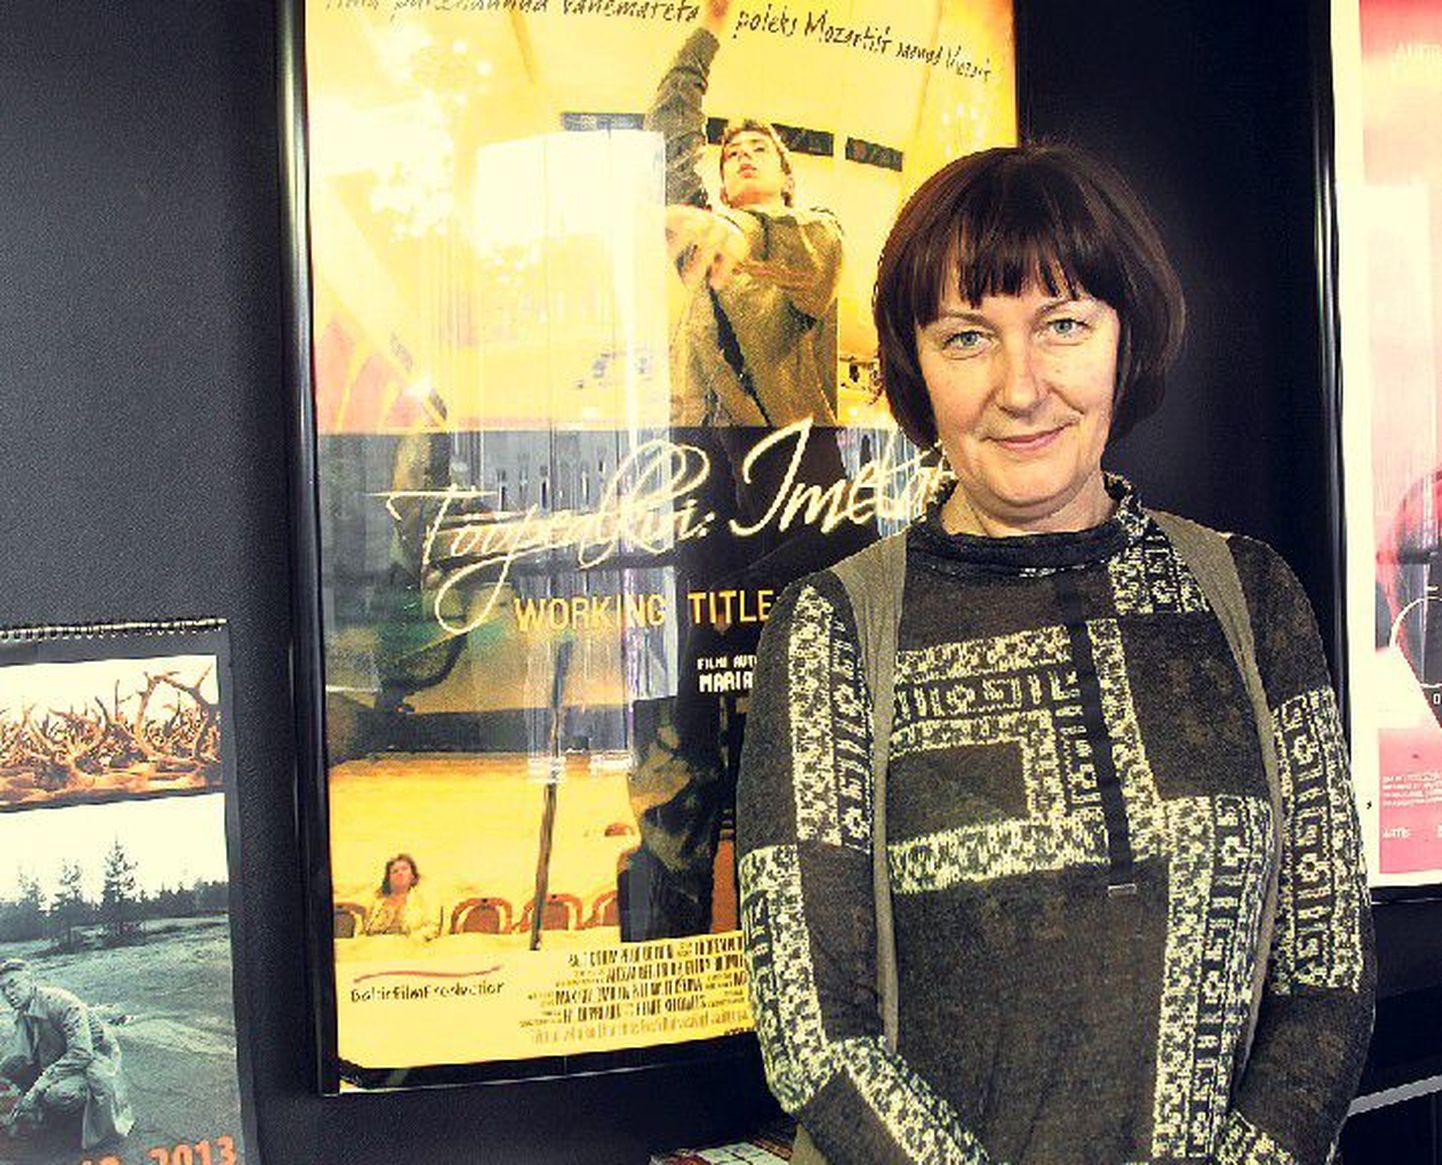 Tunnustatud ja hinnatud: produtsent ja dokfilmirežissöör Marianna Kaat esitles hiljuti kinos Artis oma viimast linateost «Tööpealkiri: Imelaps».